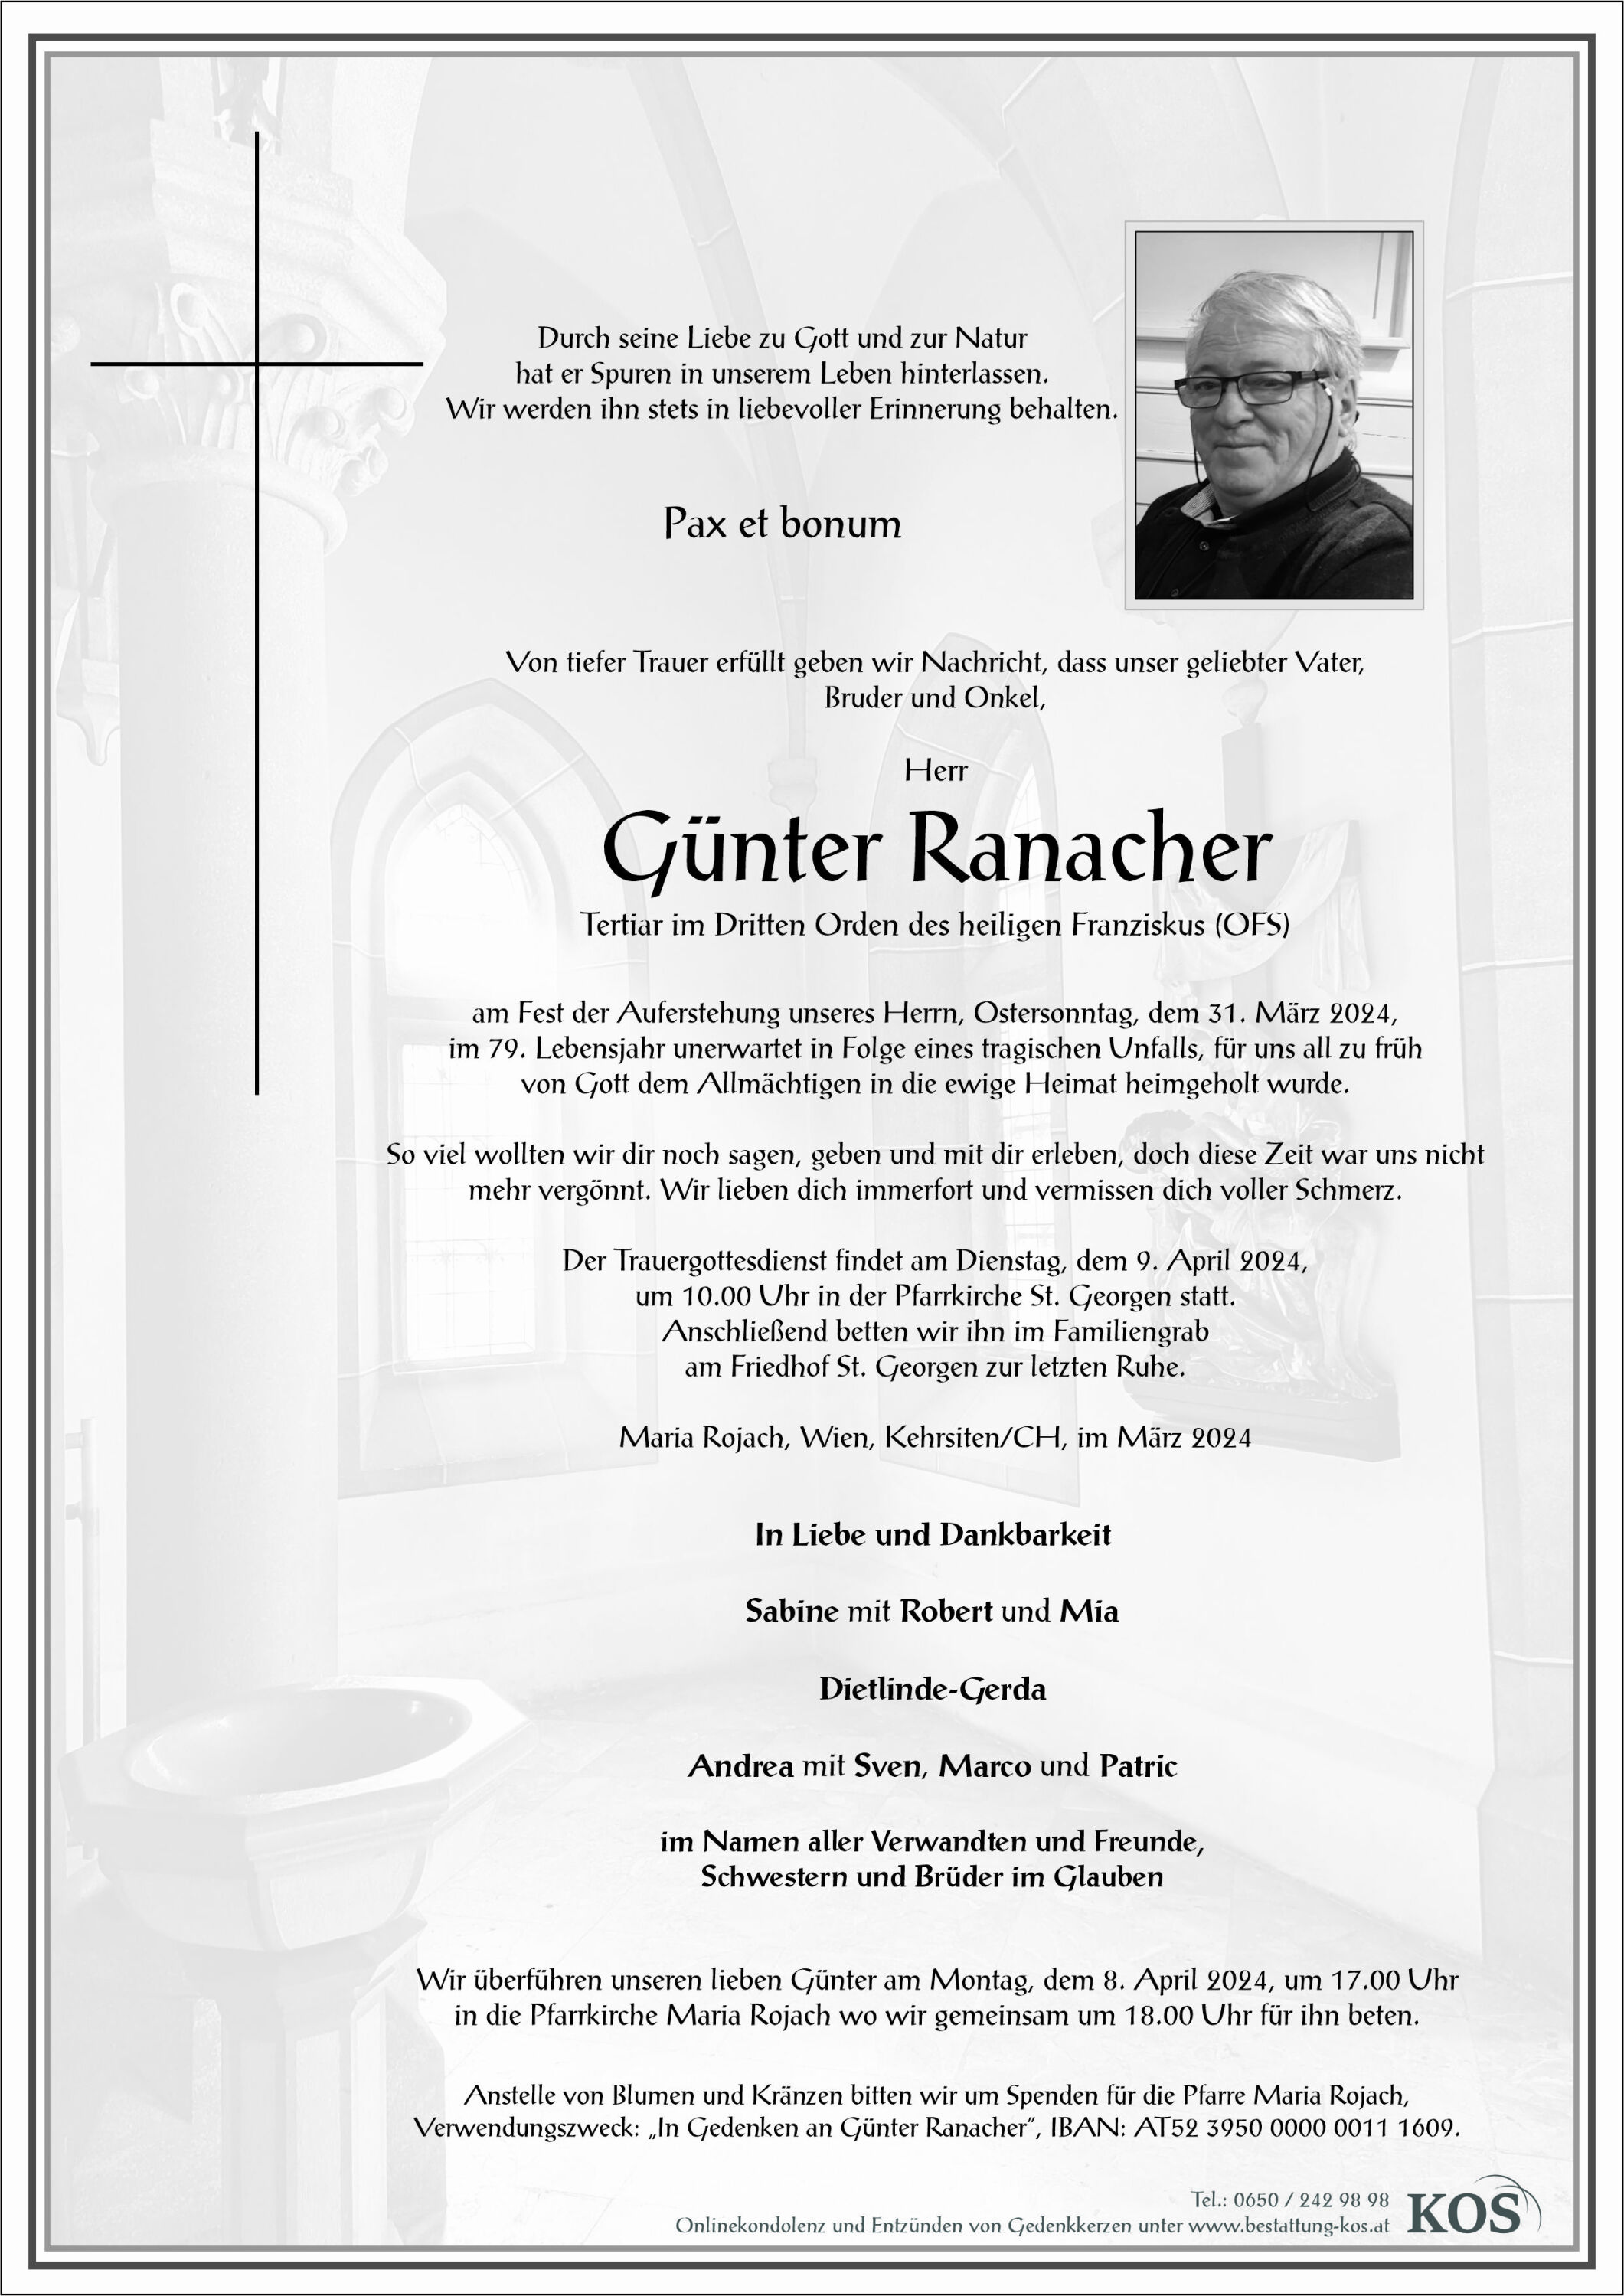 Günter Ranacher